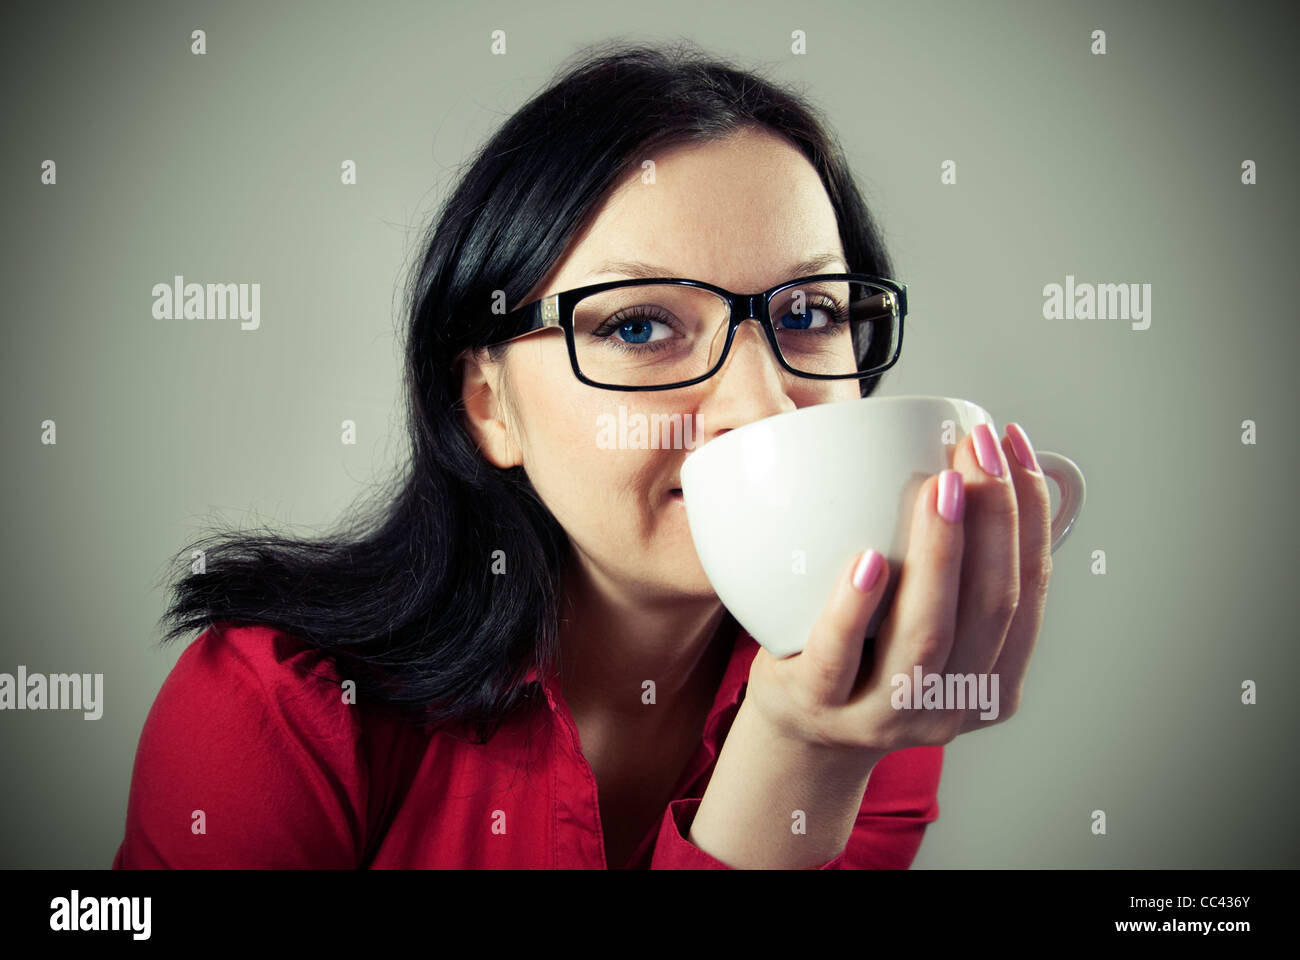 Niña morena con gafas intentando café condimentado Foto de stock